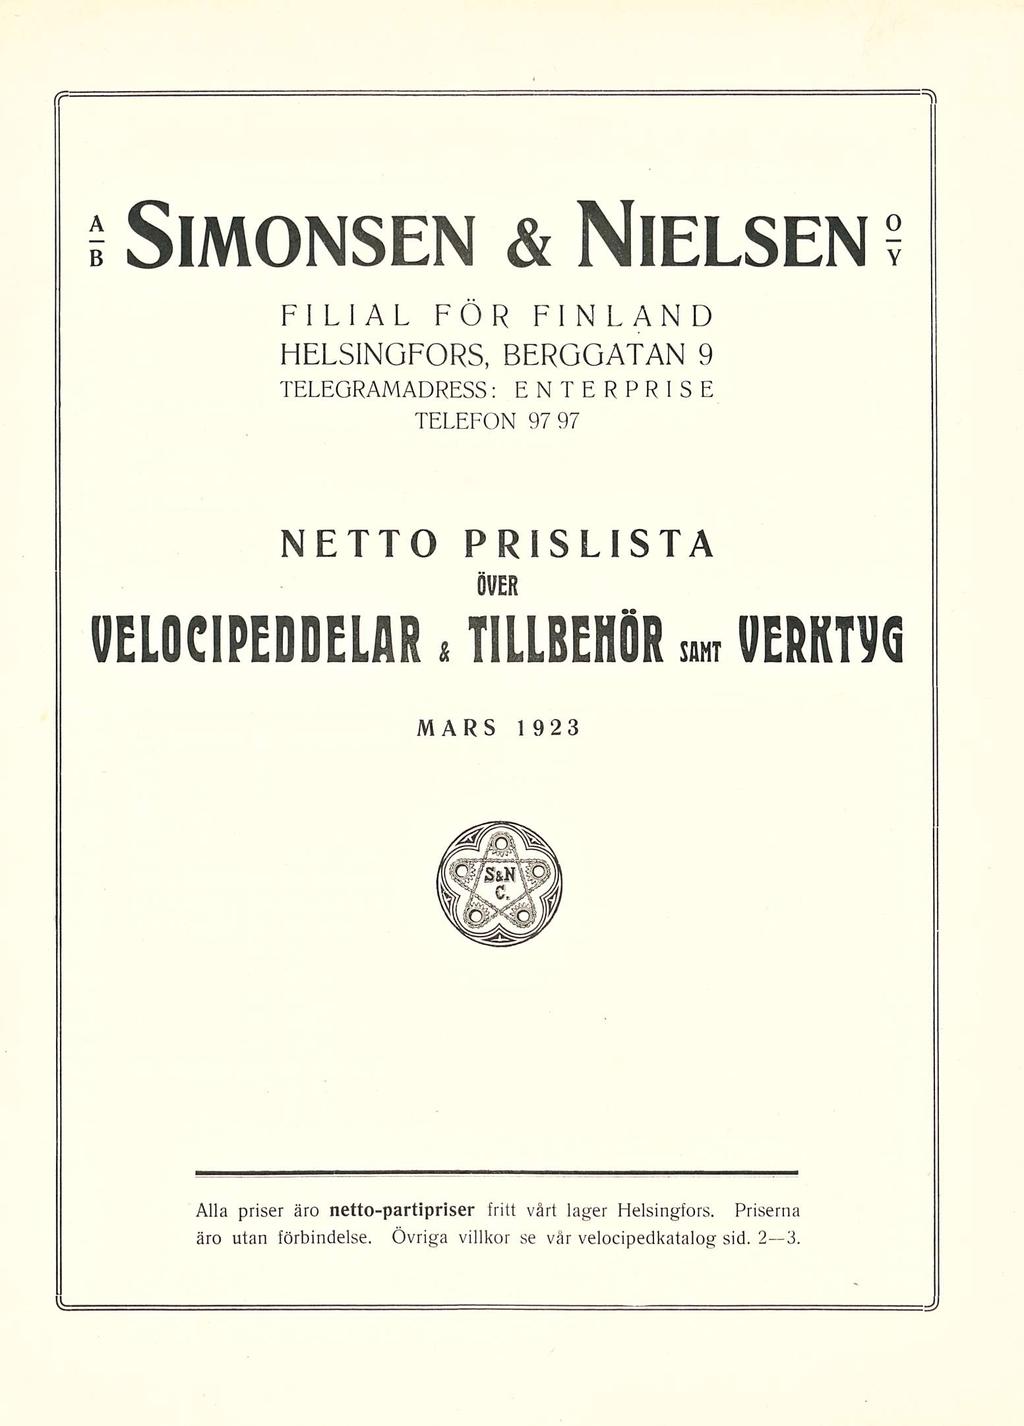 Simonsen & Nielsen FILIAL FÖR FINLAND HELSINGFORS BERGGATAN 9 TELEGRAMADRESS: ENTERPRISE TELEFON 97 97 VELOCIPEDDELAR & NETTO PRISLISTA ÖVER TILLBEHÖR